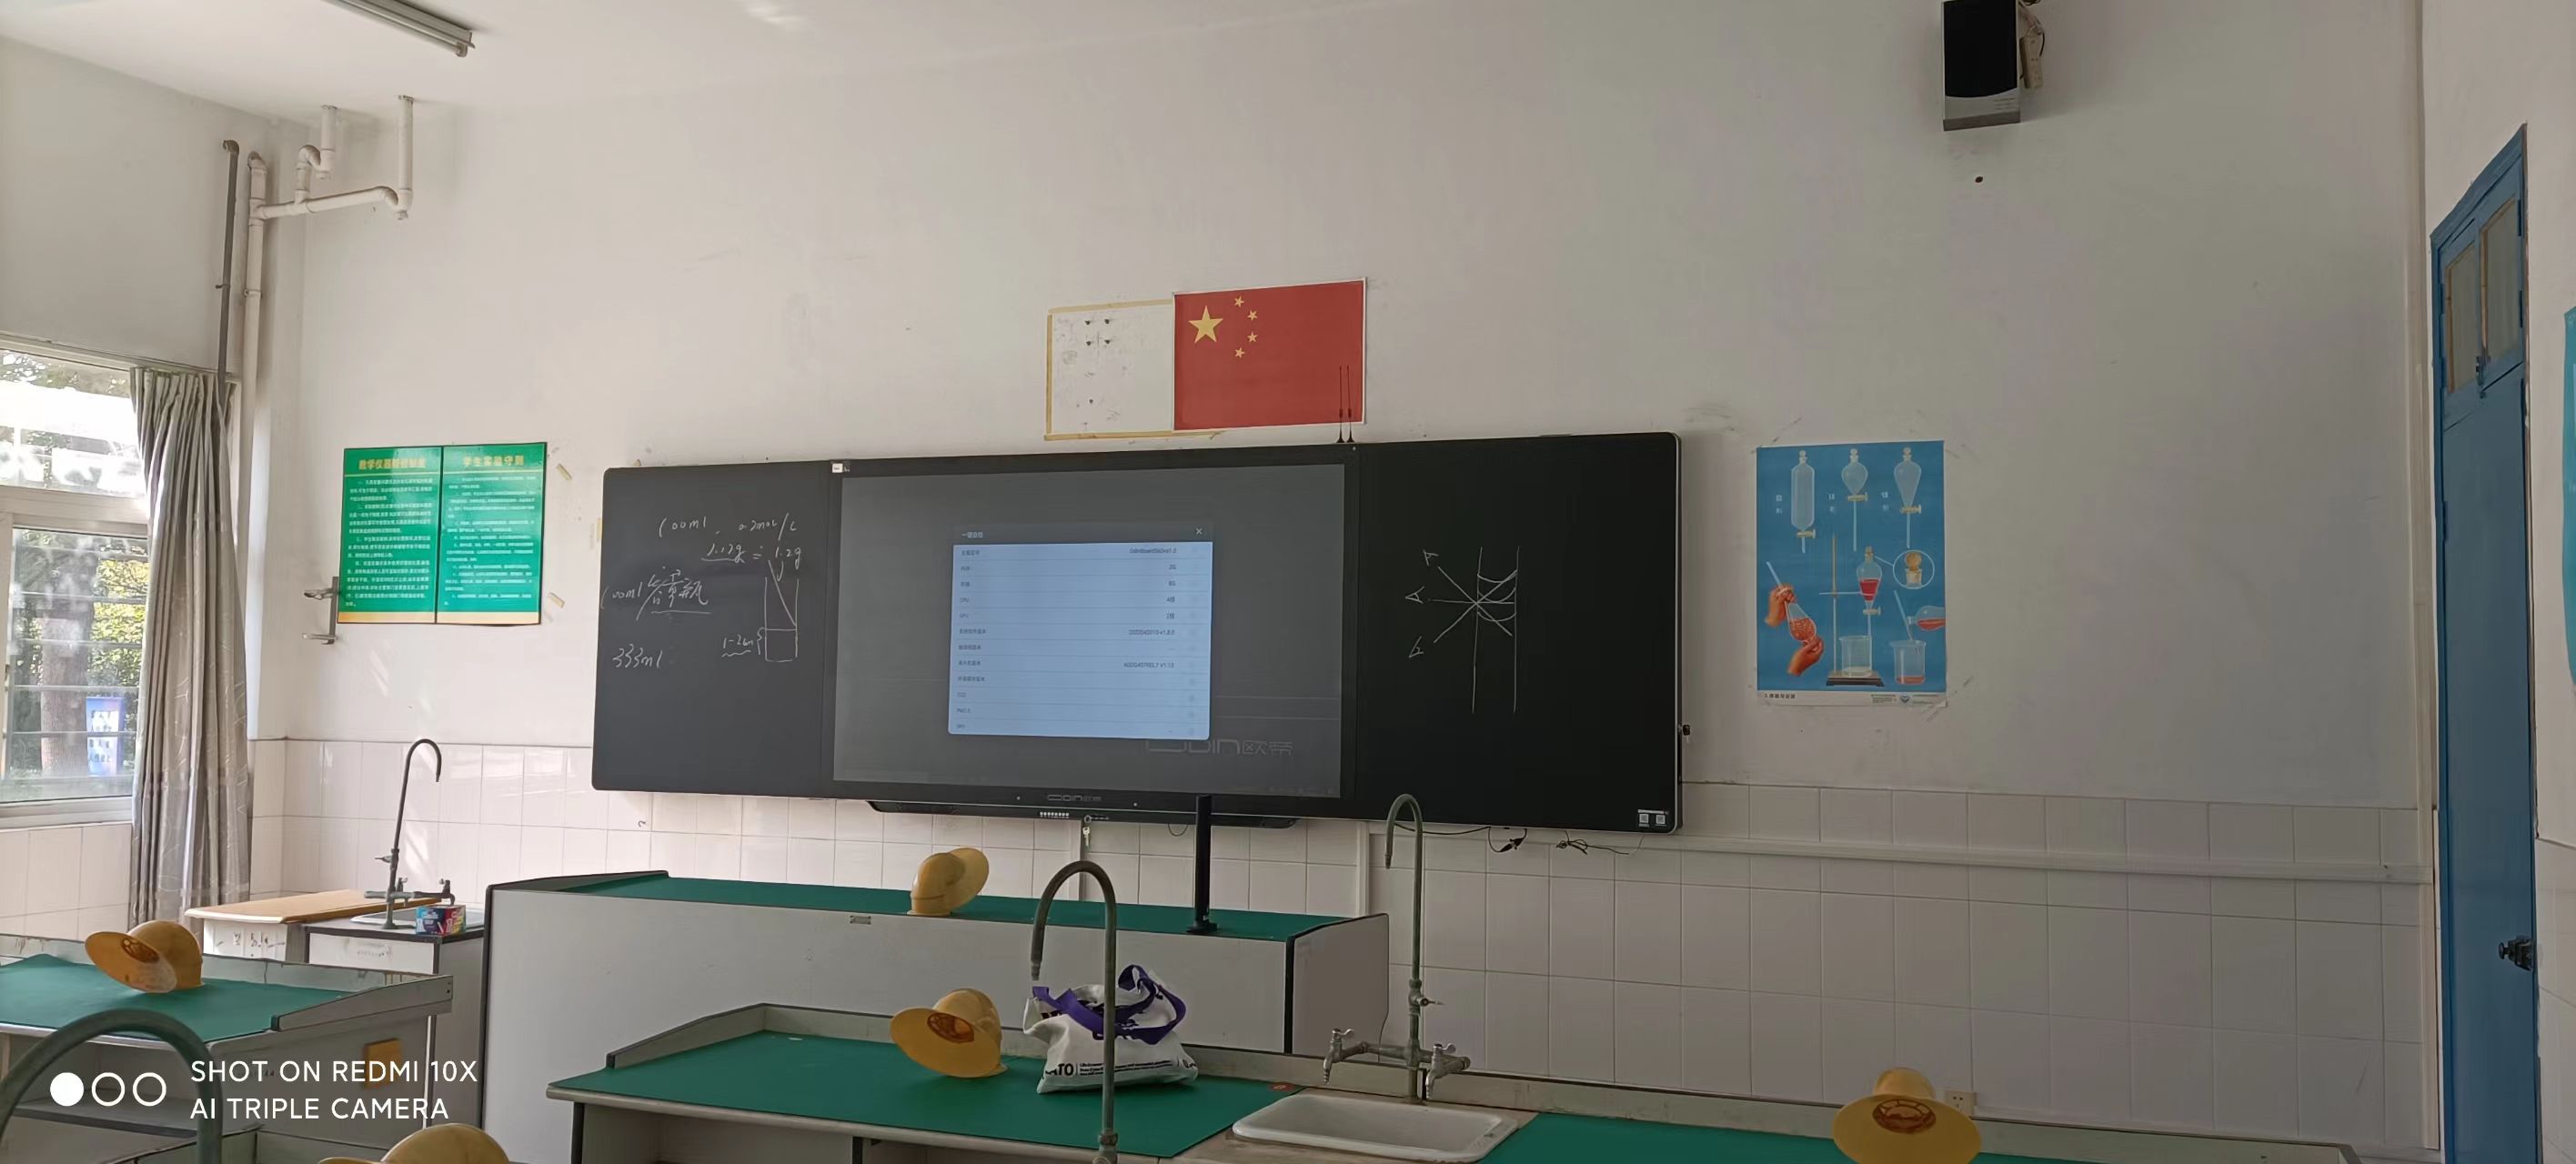 欧帝科技:立足教育本质,用科技赋能智慧黑板